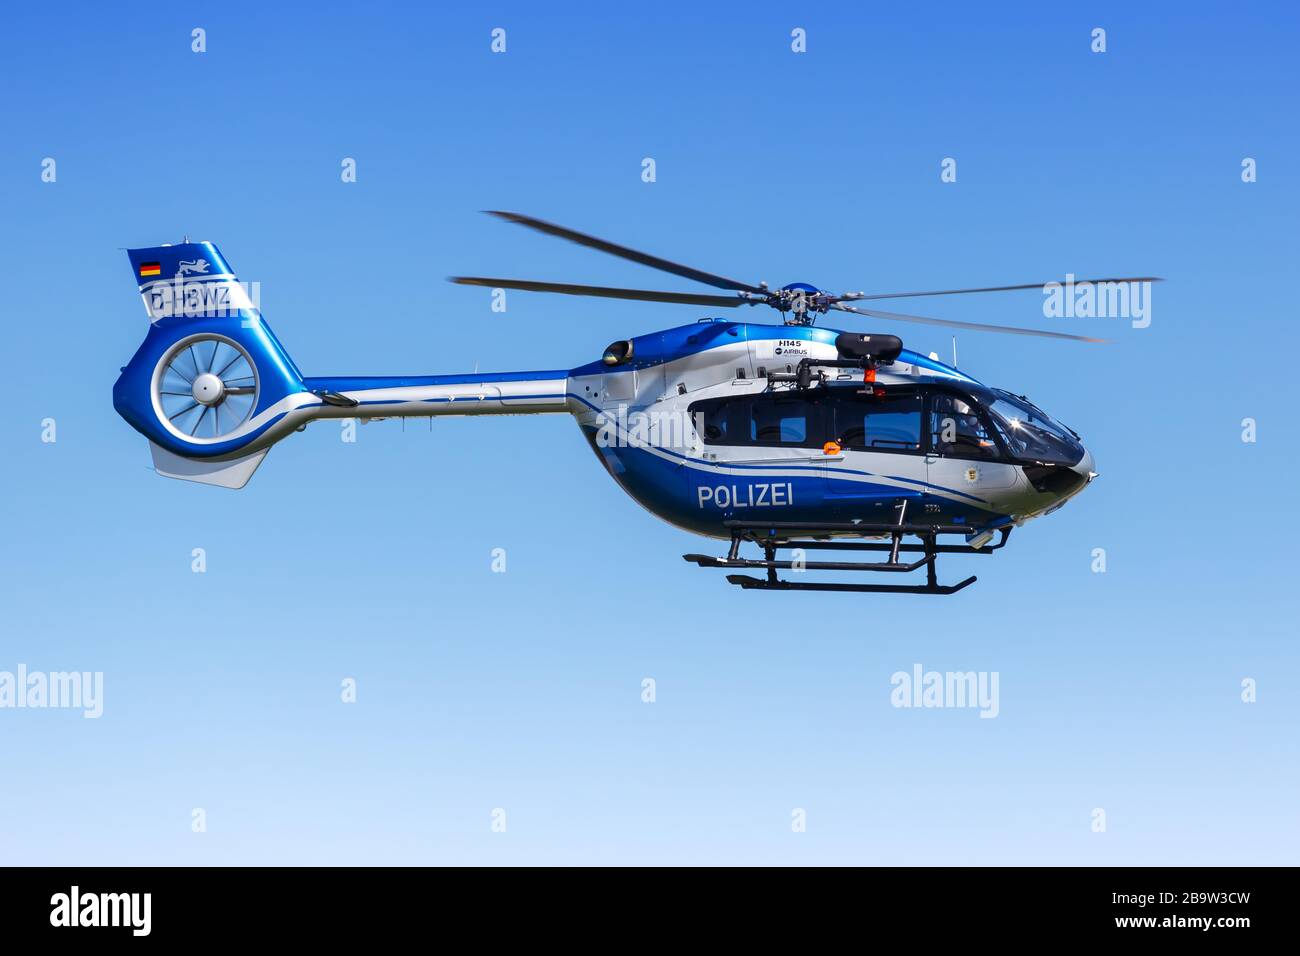 Stuttgart, 8. Mai 2018: Polizeihubschrauber Eurocopter H145 am Flughafen Stuttgart (STR) in Deutschland. Stockfoto